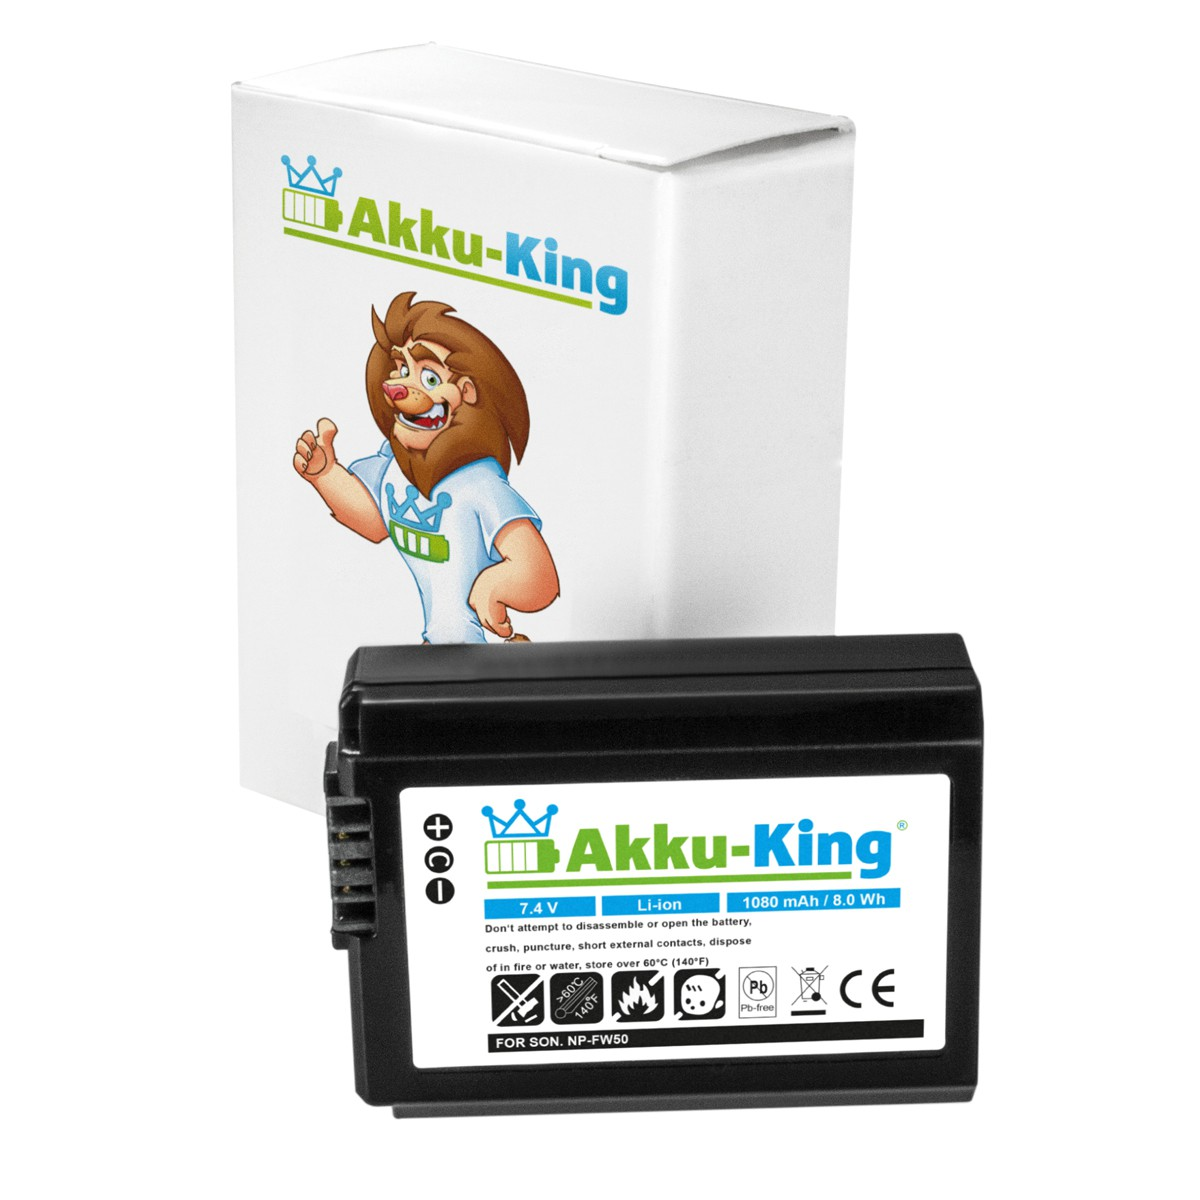 Li-Ion NP-FW50 Akku kompatibel Volt, 7.4 Sony mit Kamera-Akku, AKKU-KING 1080mAh